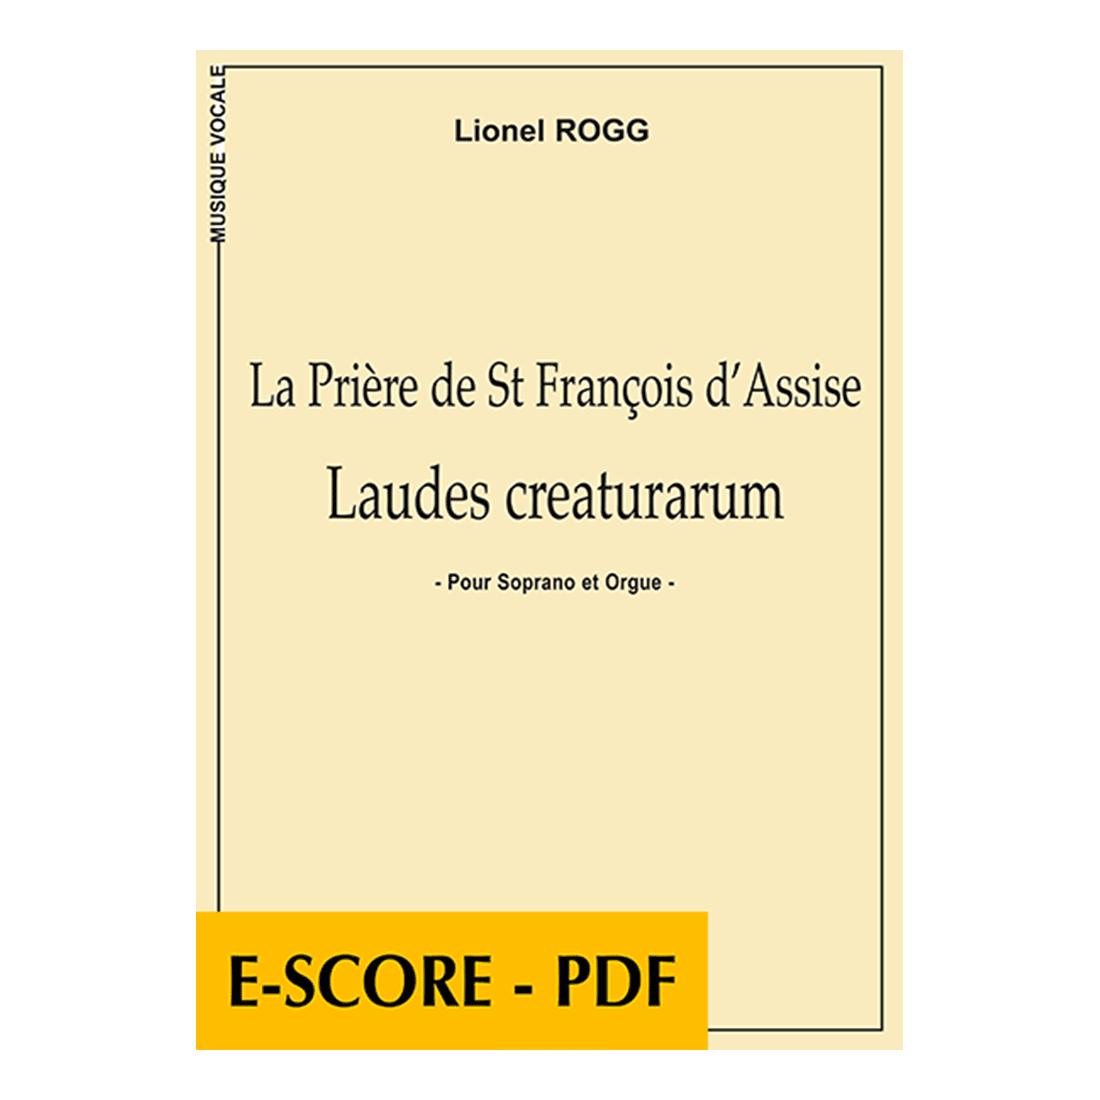 Laudes creaturarum für Sopran und Orgel - E-score PDF